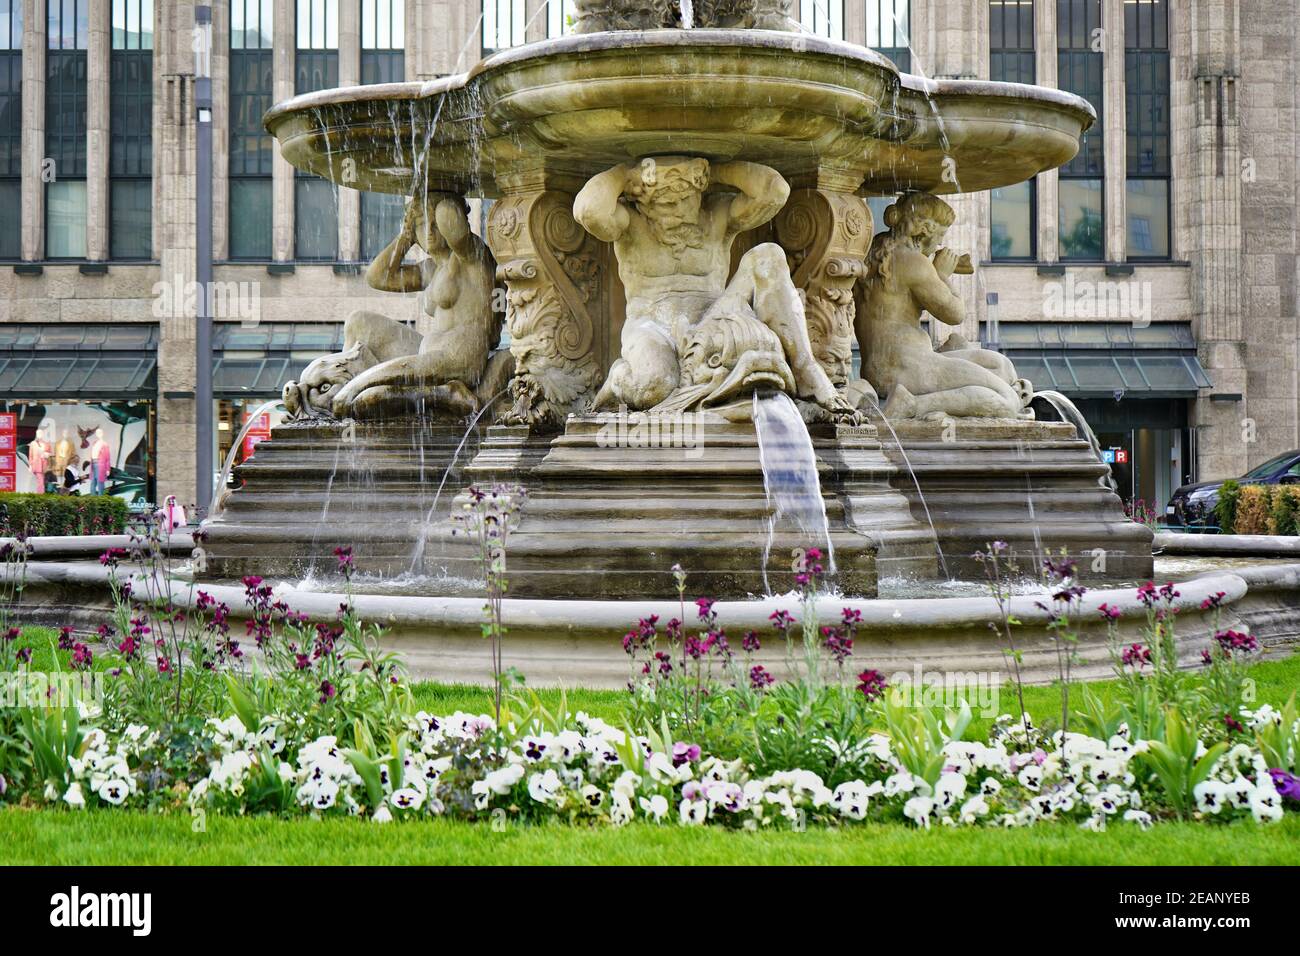 Le néo-baroque 'Schalenbrunnen' (fontaine de bol) à Corneliusplatz, érigé en 1882 par le sculpteur Leo Müsch. Banque D'Images